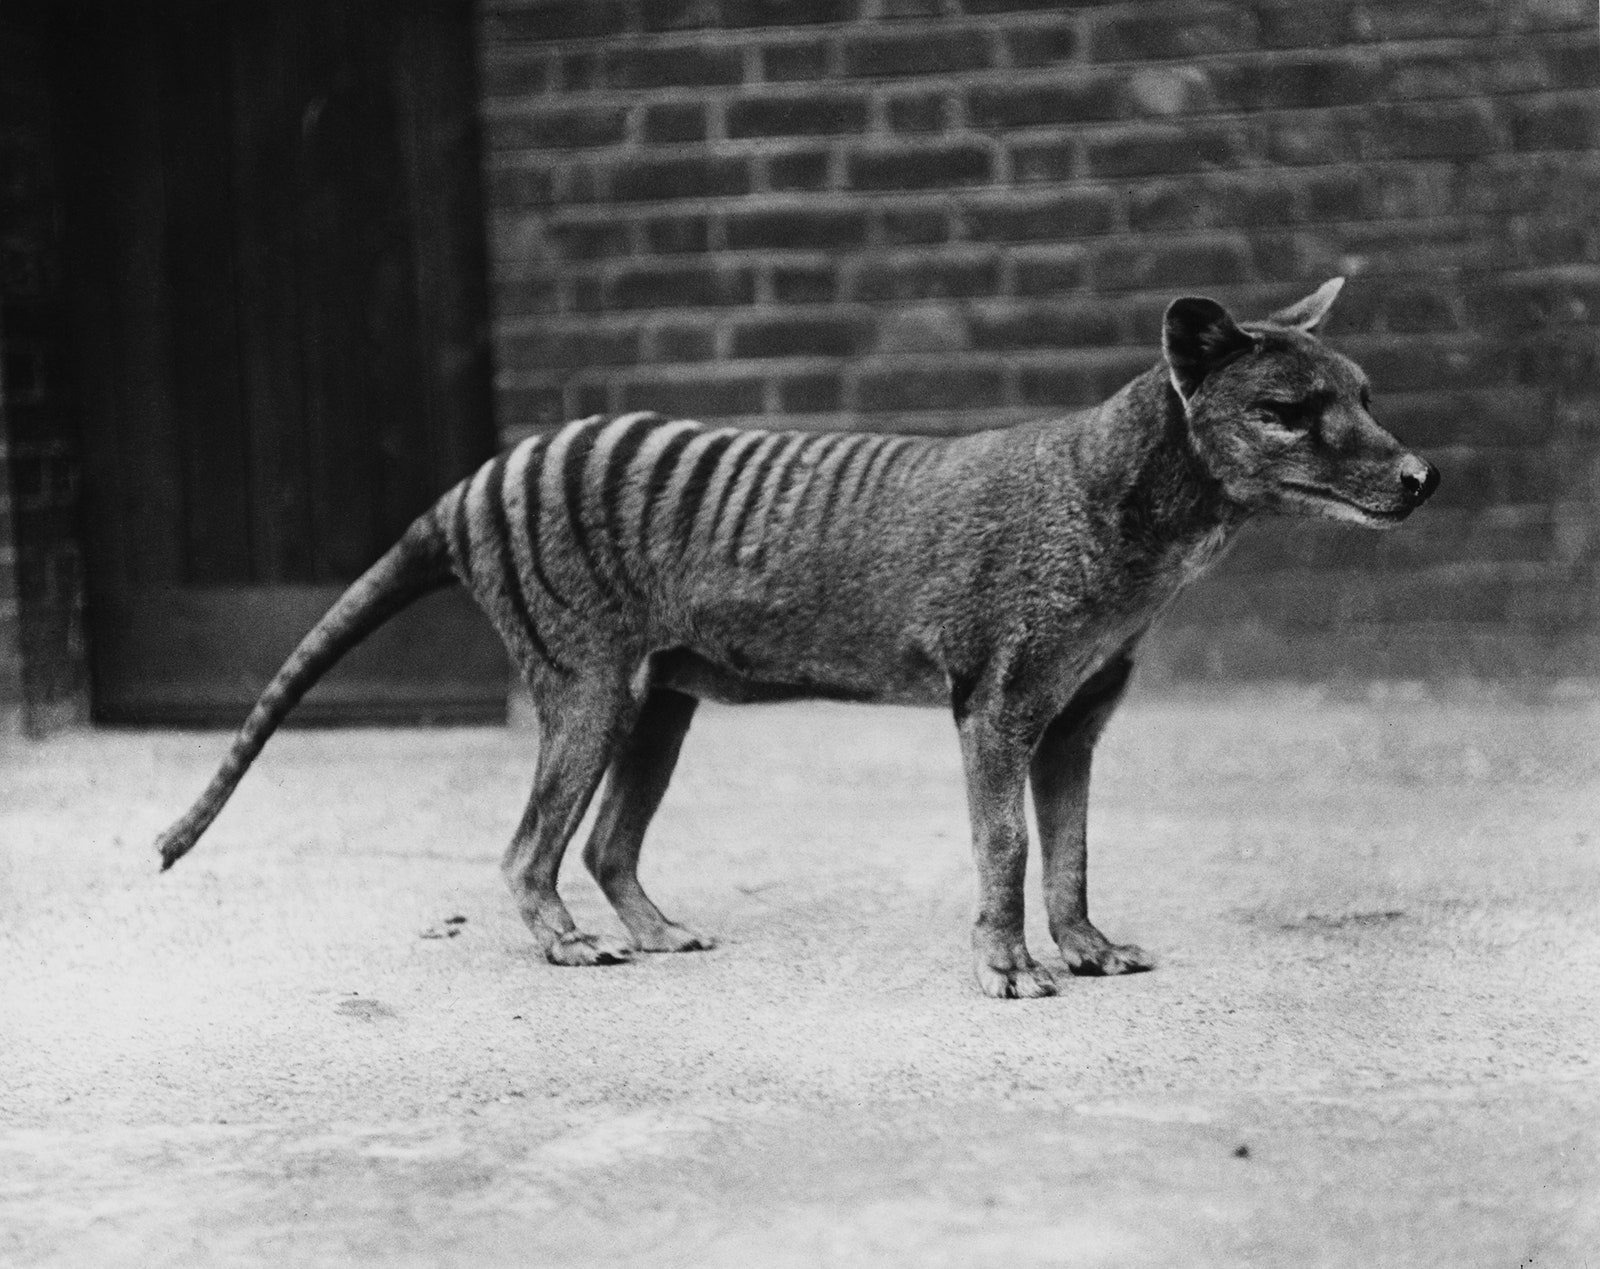 A Tasmanian tiger or thylacine in captivity circa 1930.